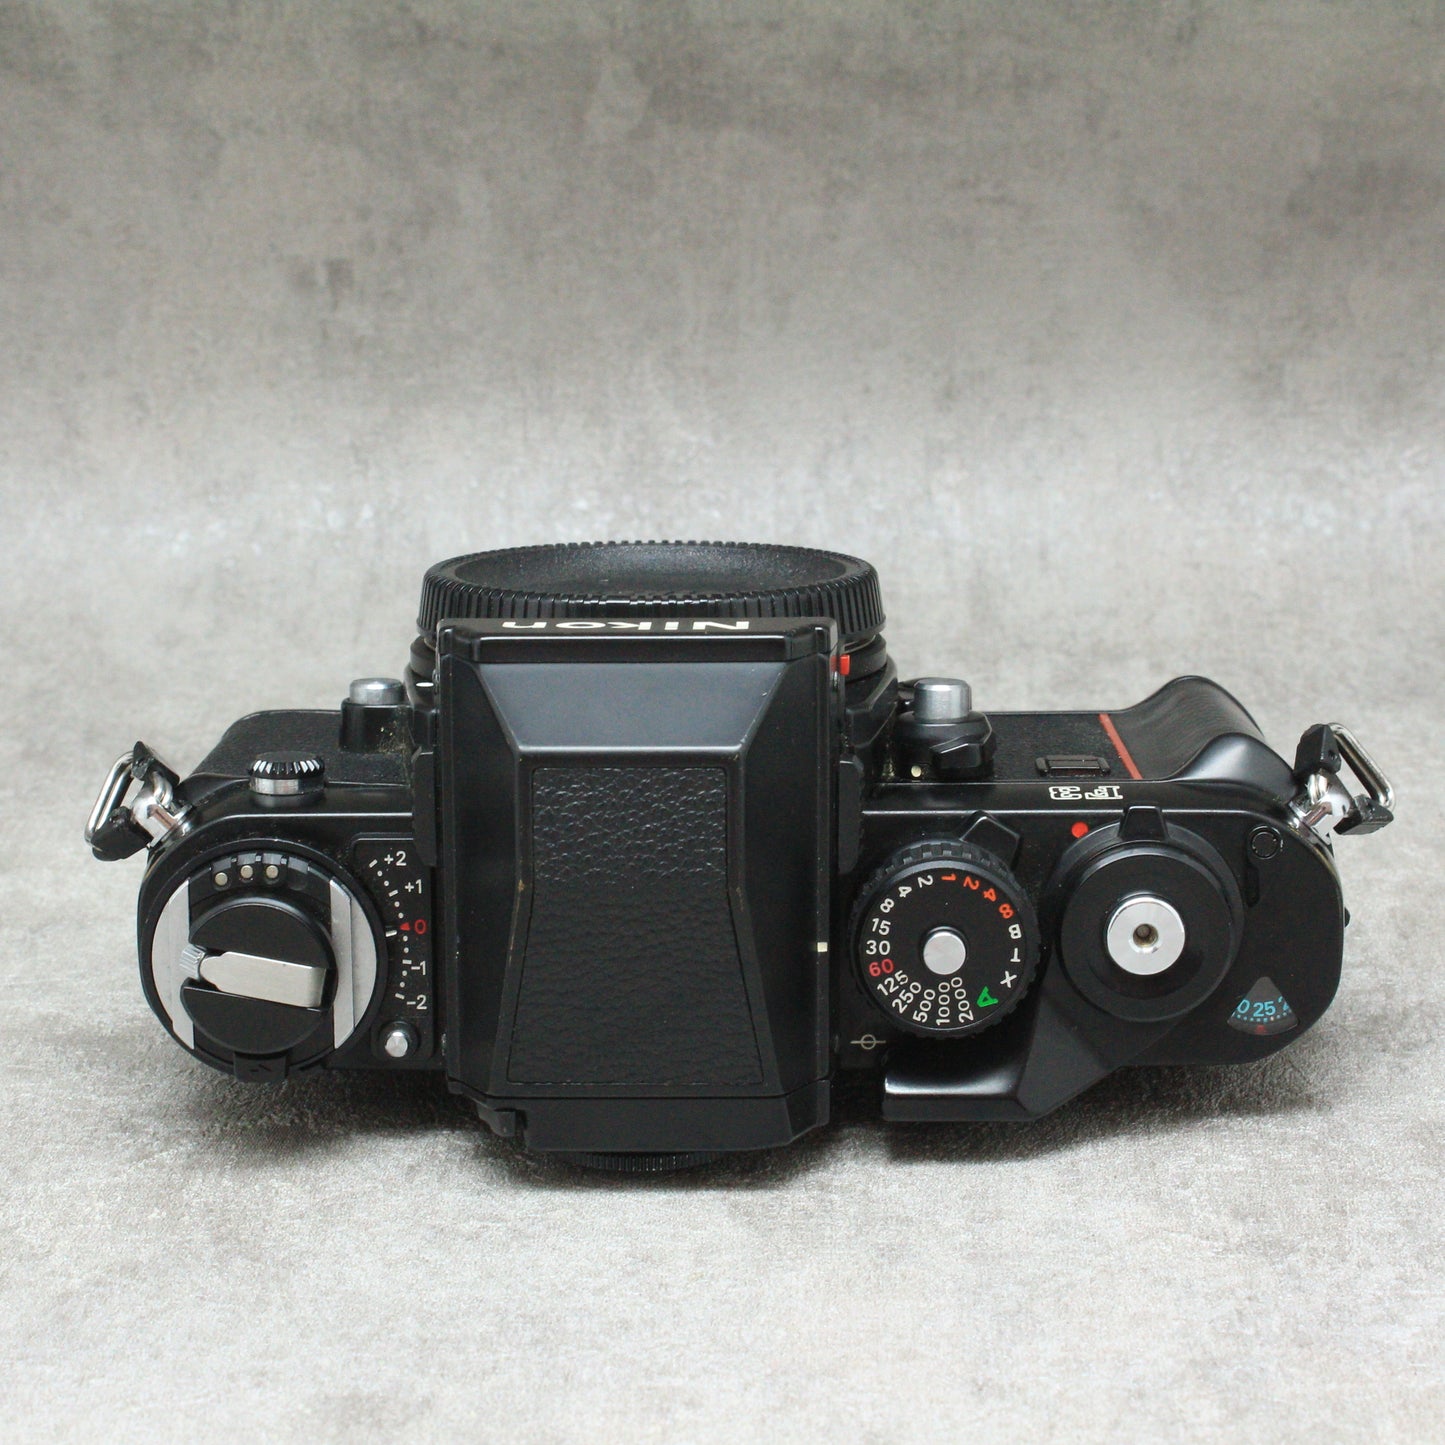 中古品 Nikon F3 初期型 ハヤト商会